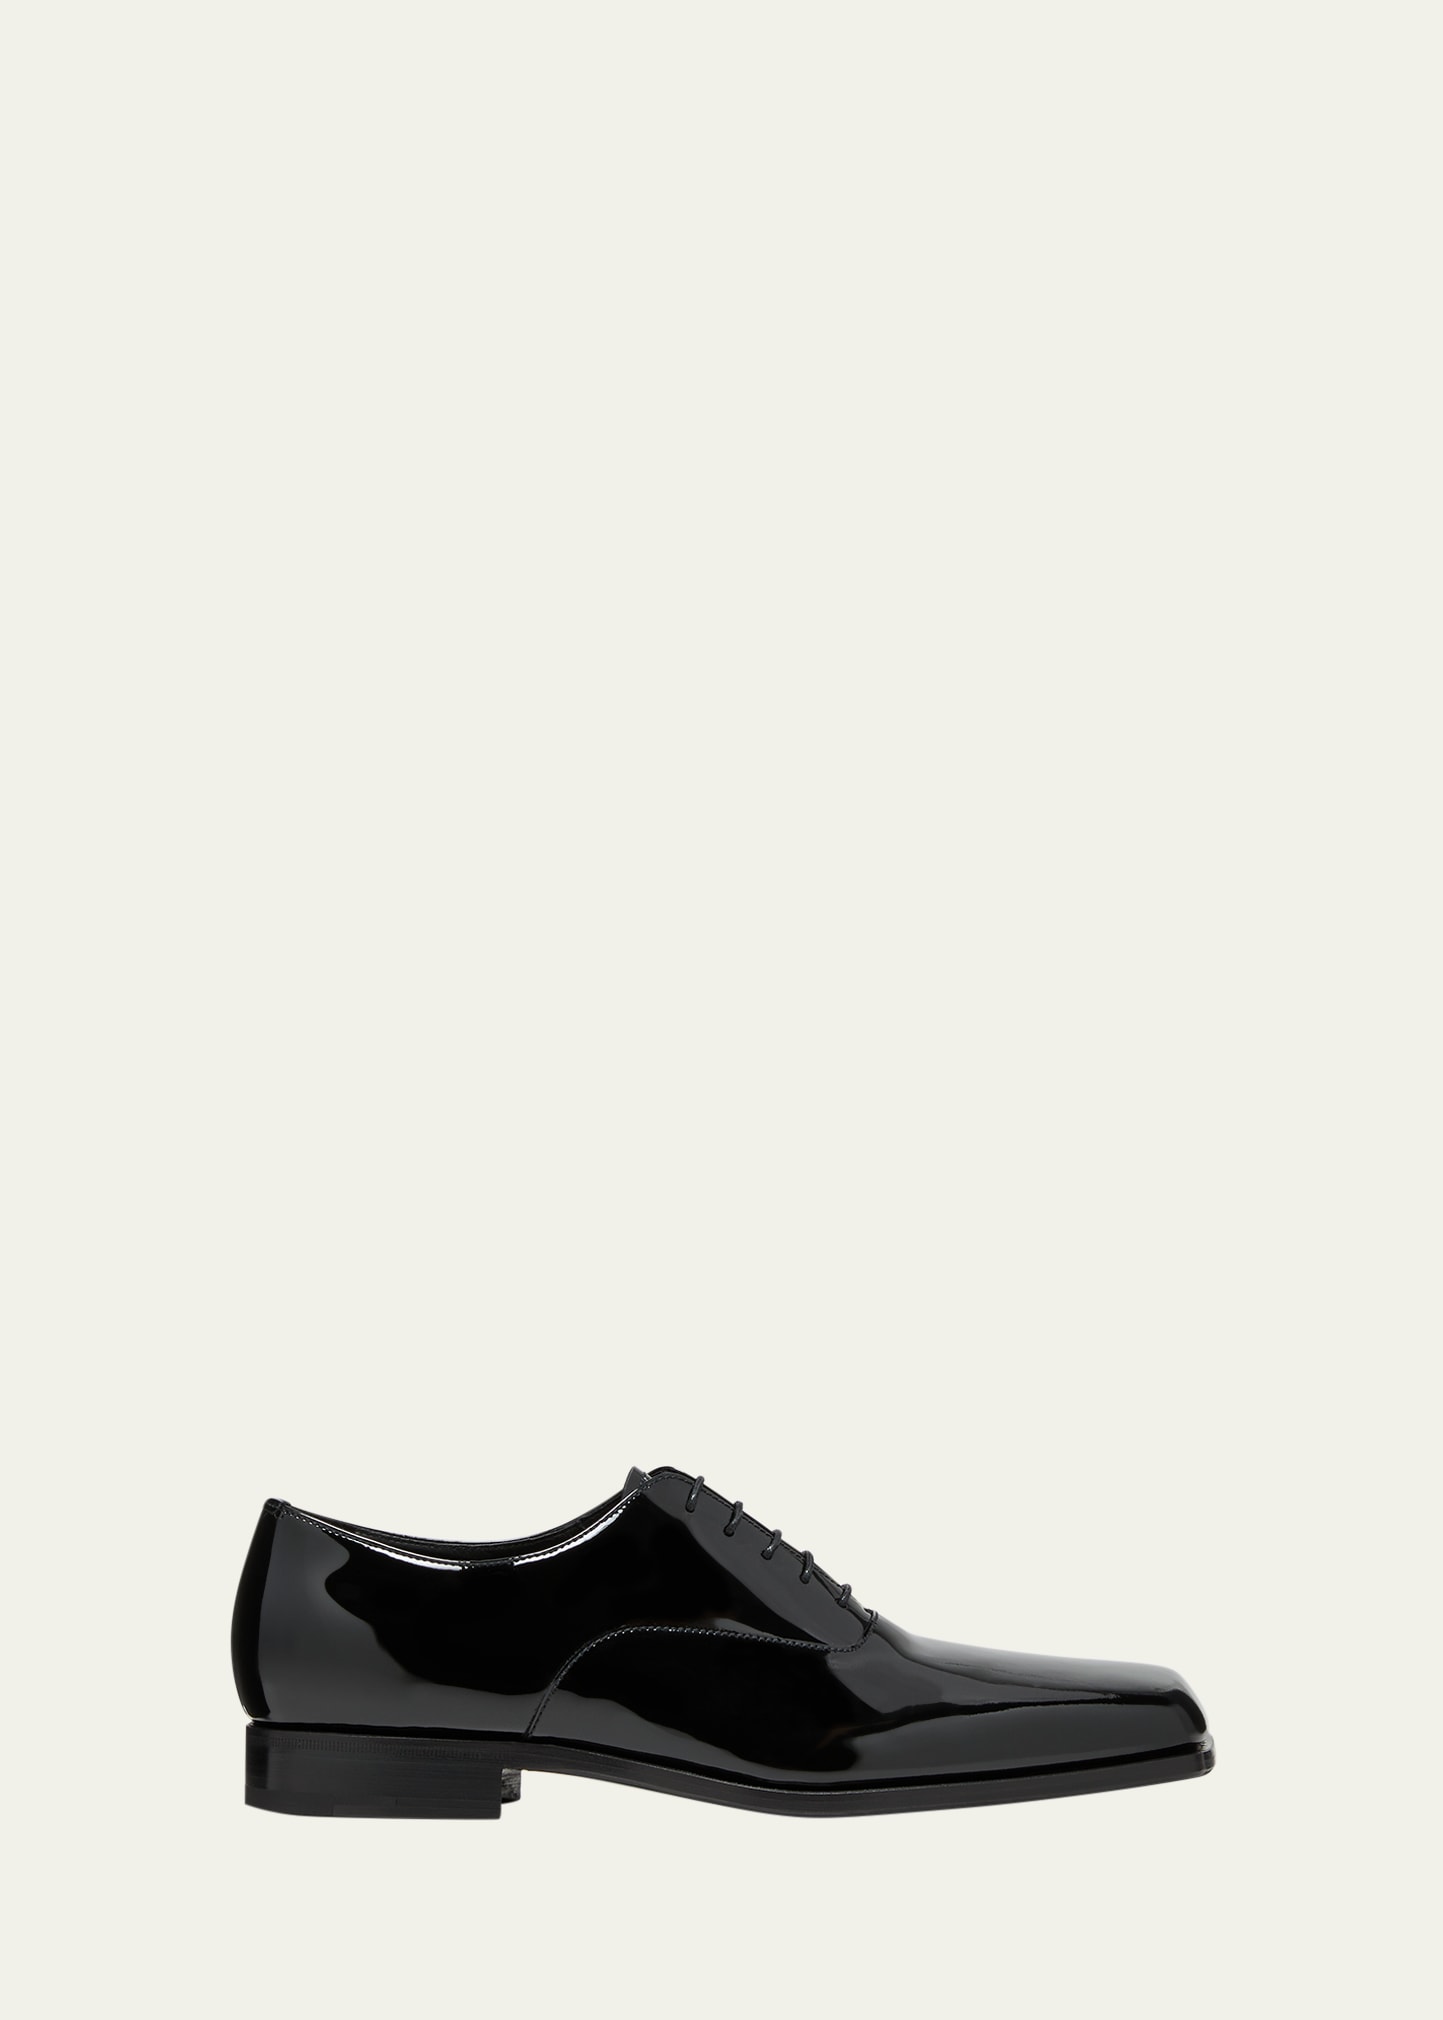 Prada Men's Jokoto Patent Leather Oxfords In Black